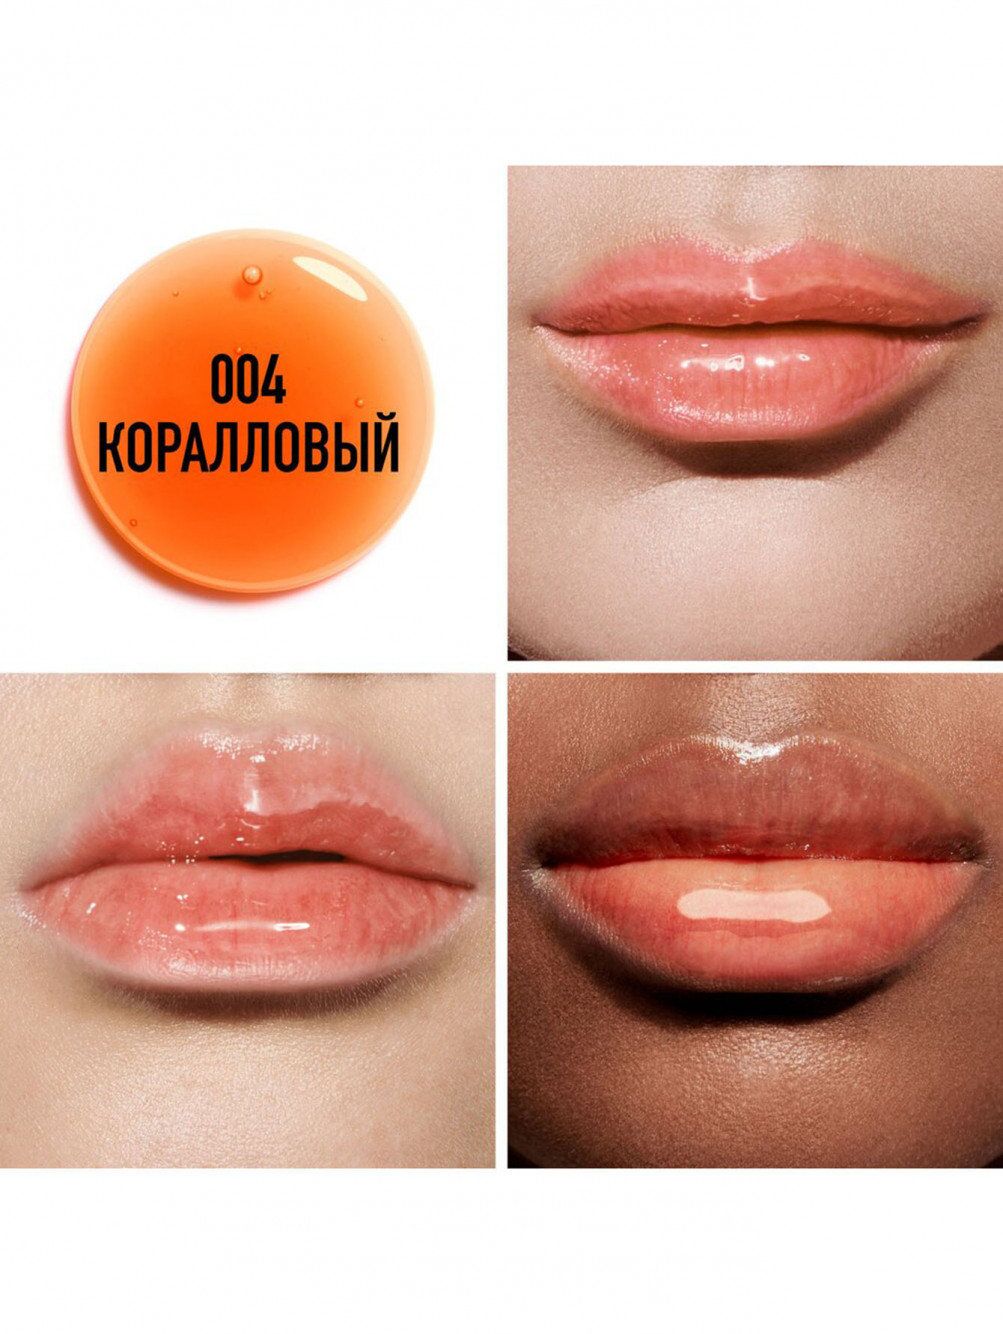 Dior Addict Lip Oil Питательное масло для губ 004, 6 г - Обтравка2